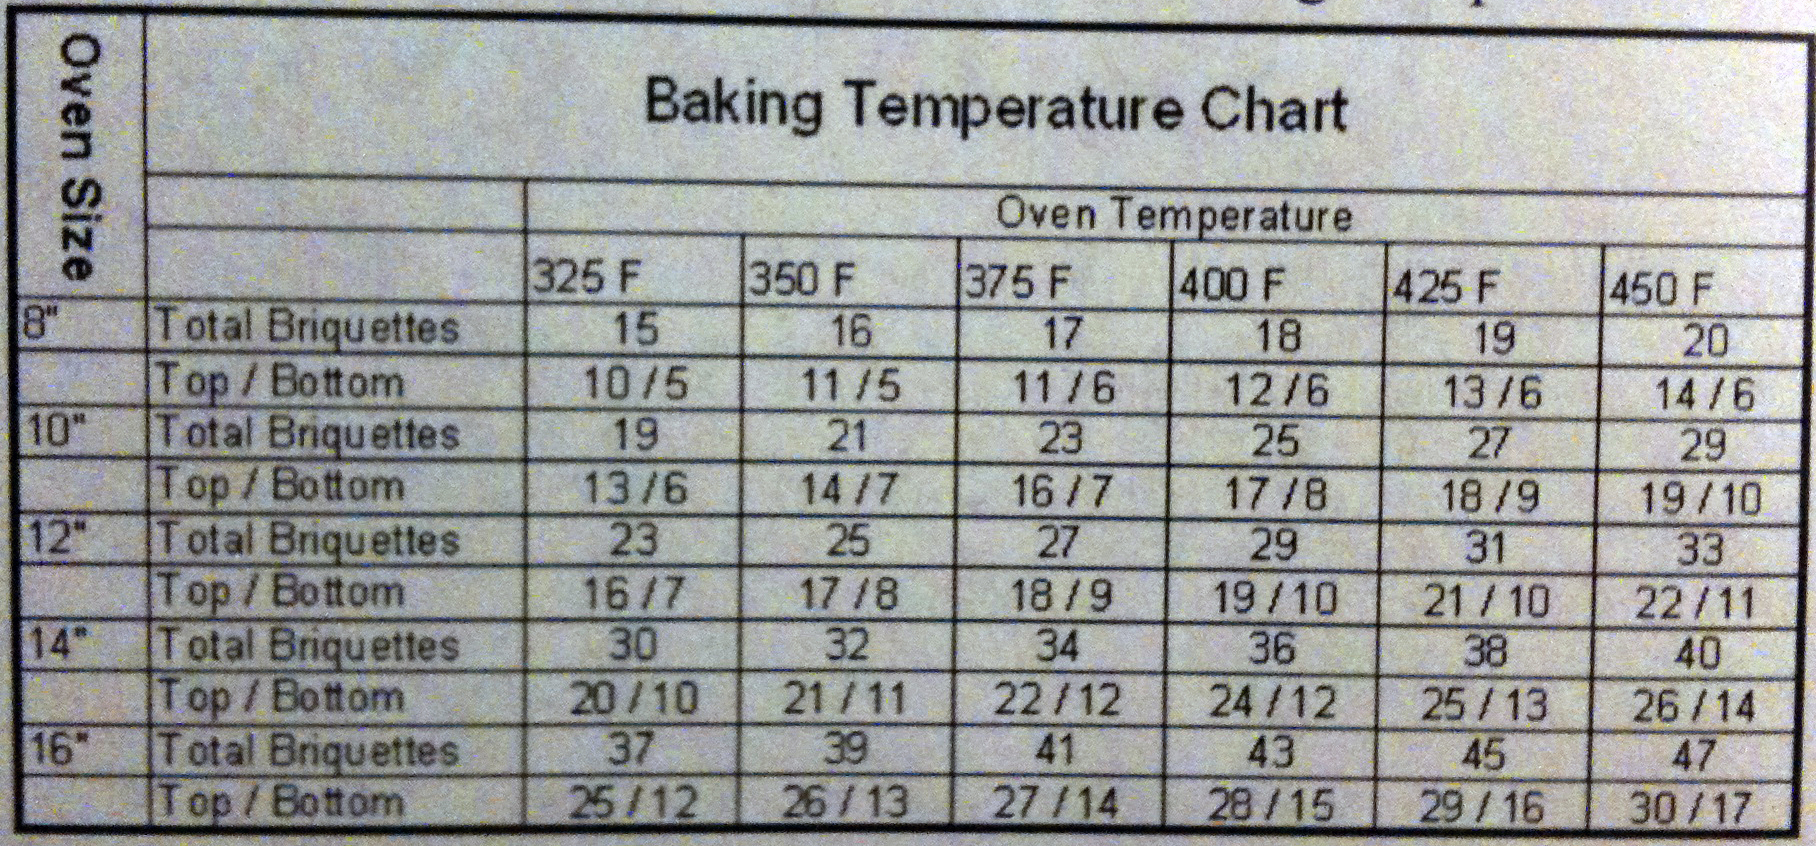 Dutch Oven Coal Temperature Chart